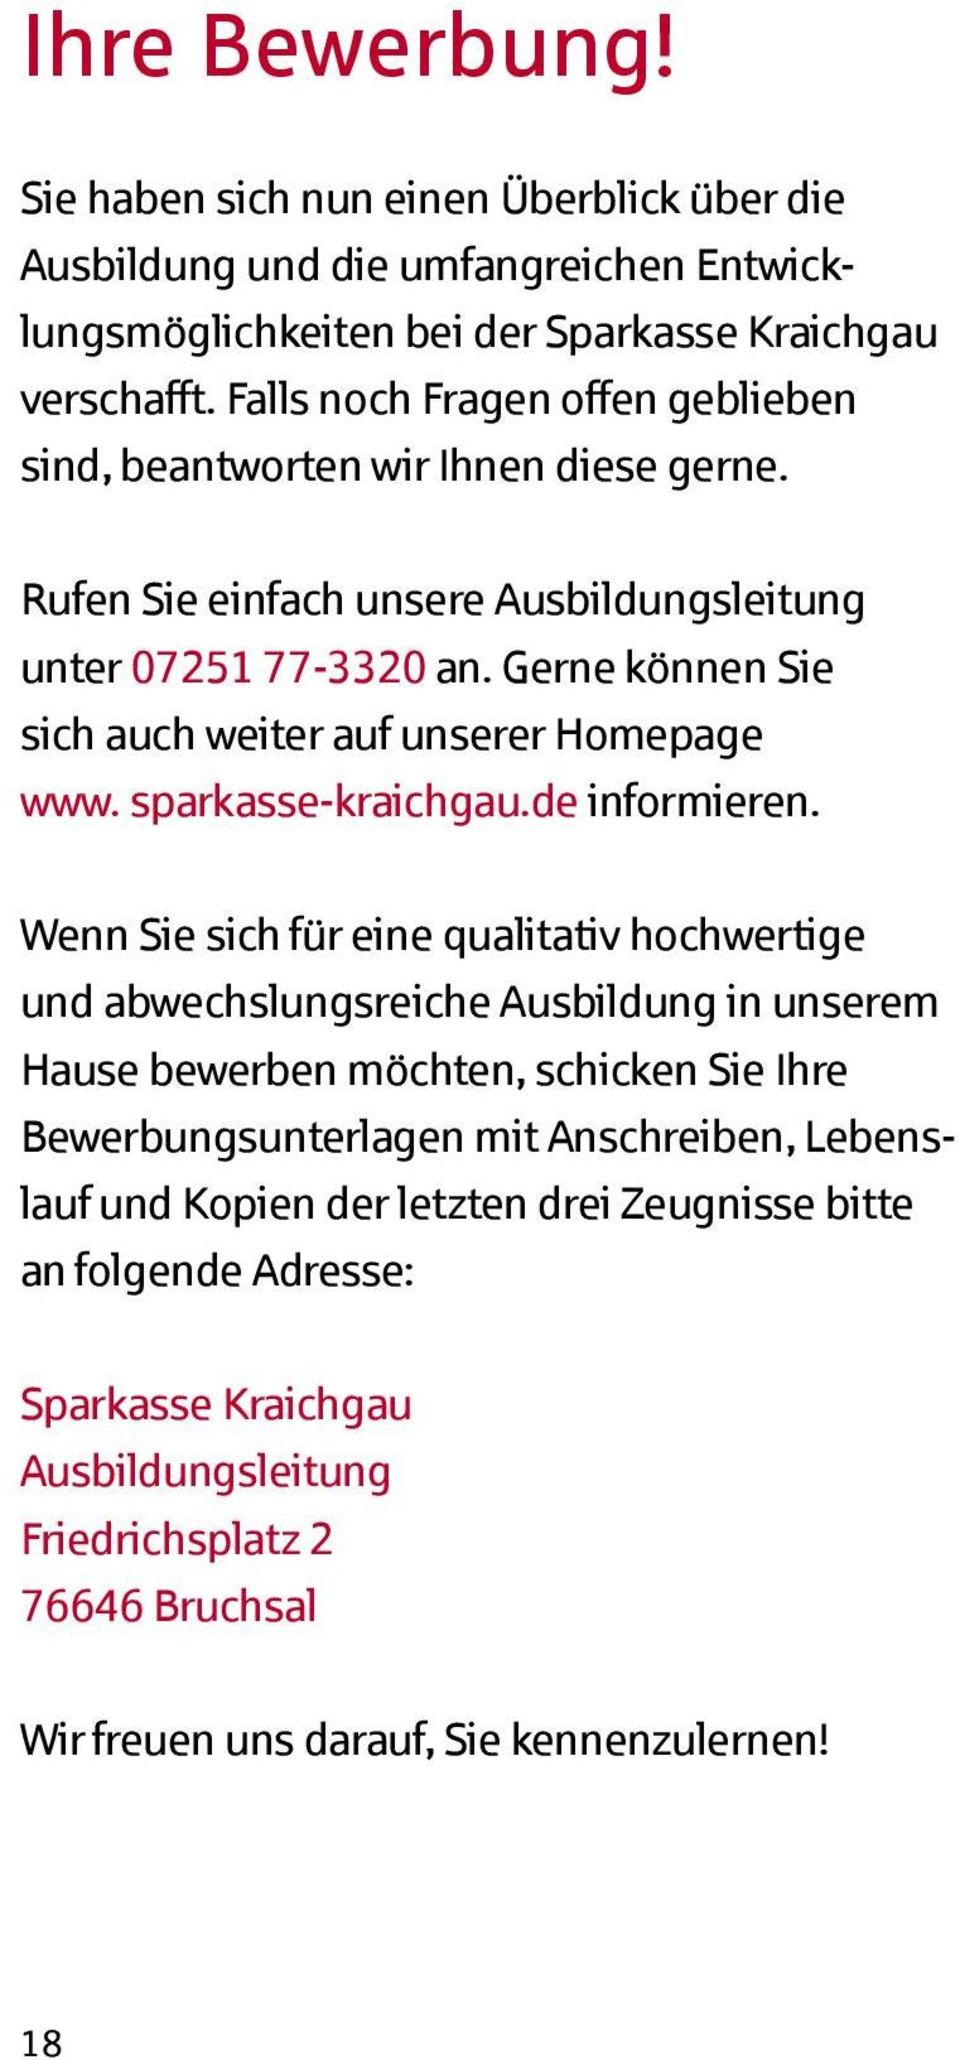 Gerne können Sie sich auch weiter auf unserer Homepage www. sparkasse-kraichgau.de informieren.